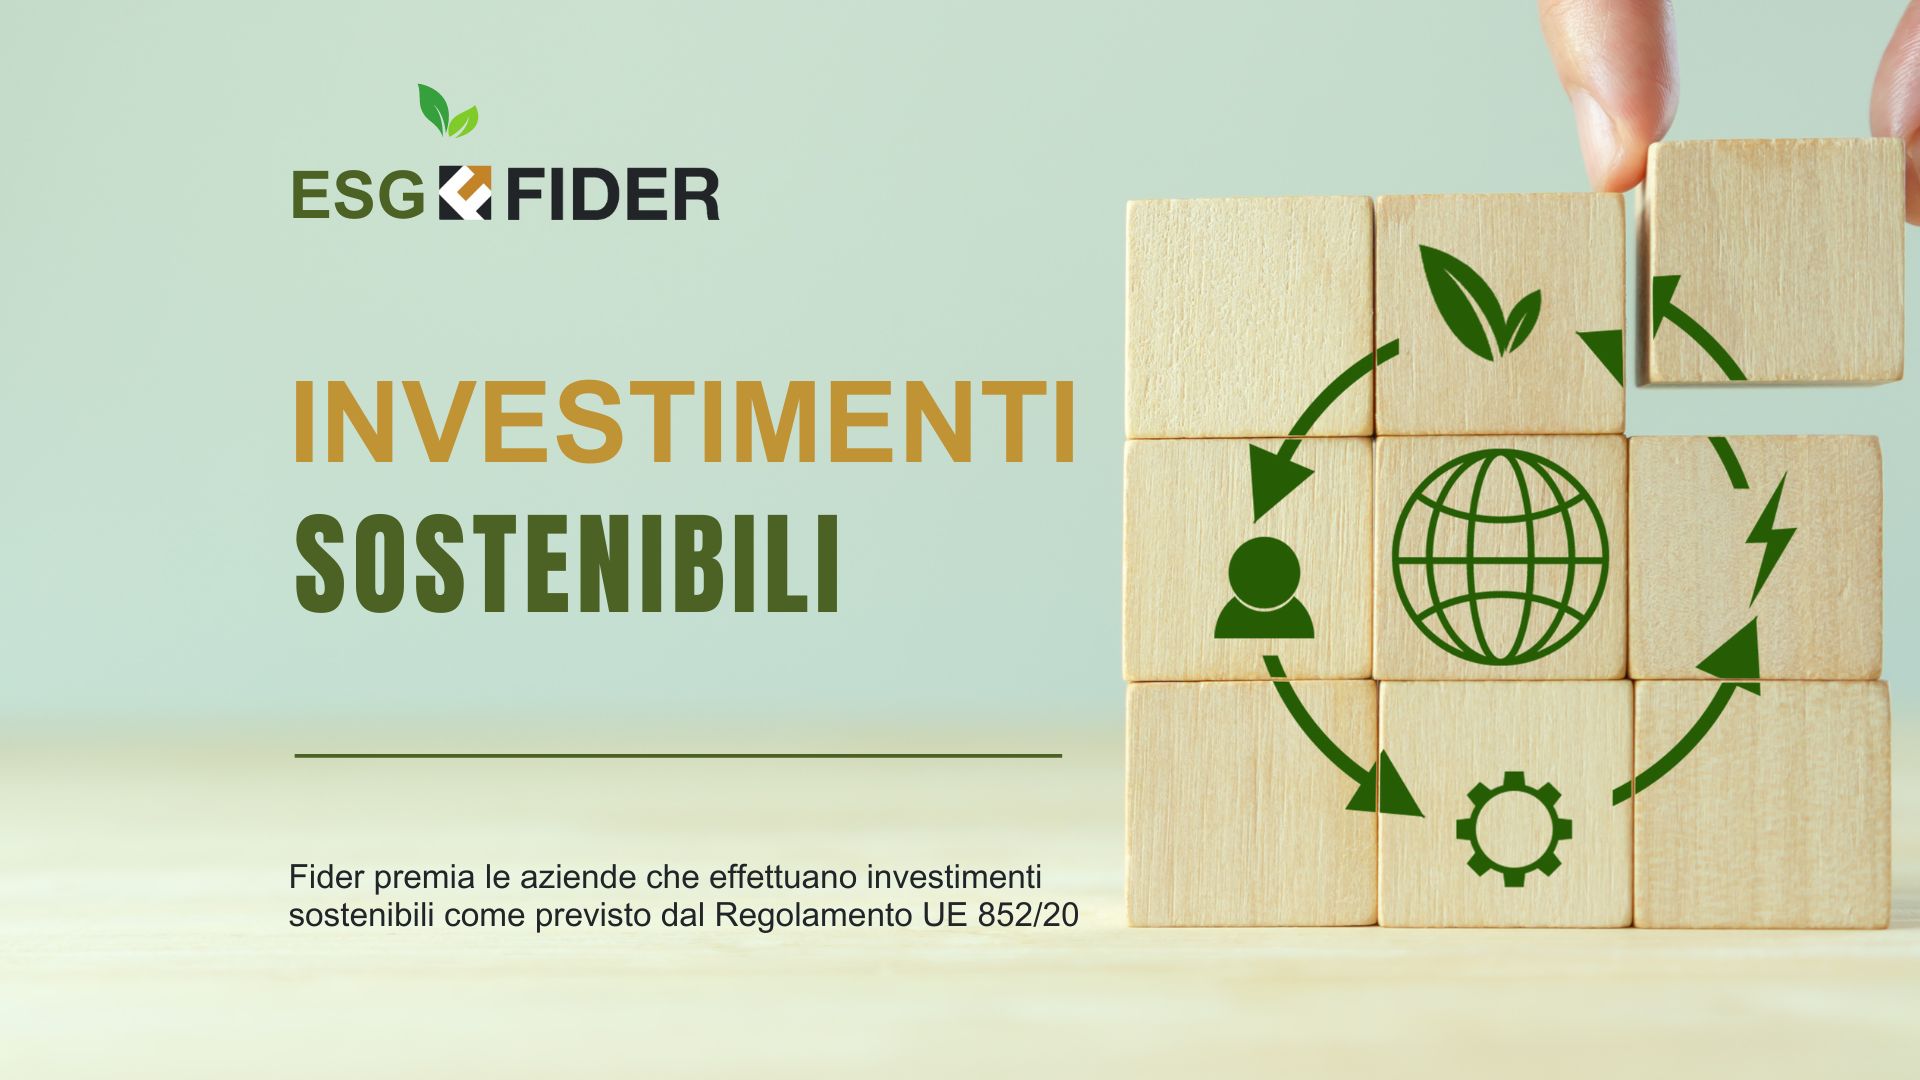 ESG: Fider premia le imprese che investono in ecosostenibilità